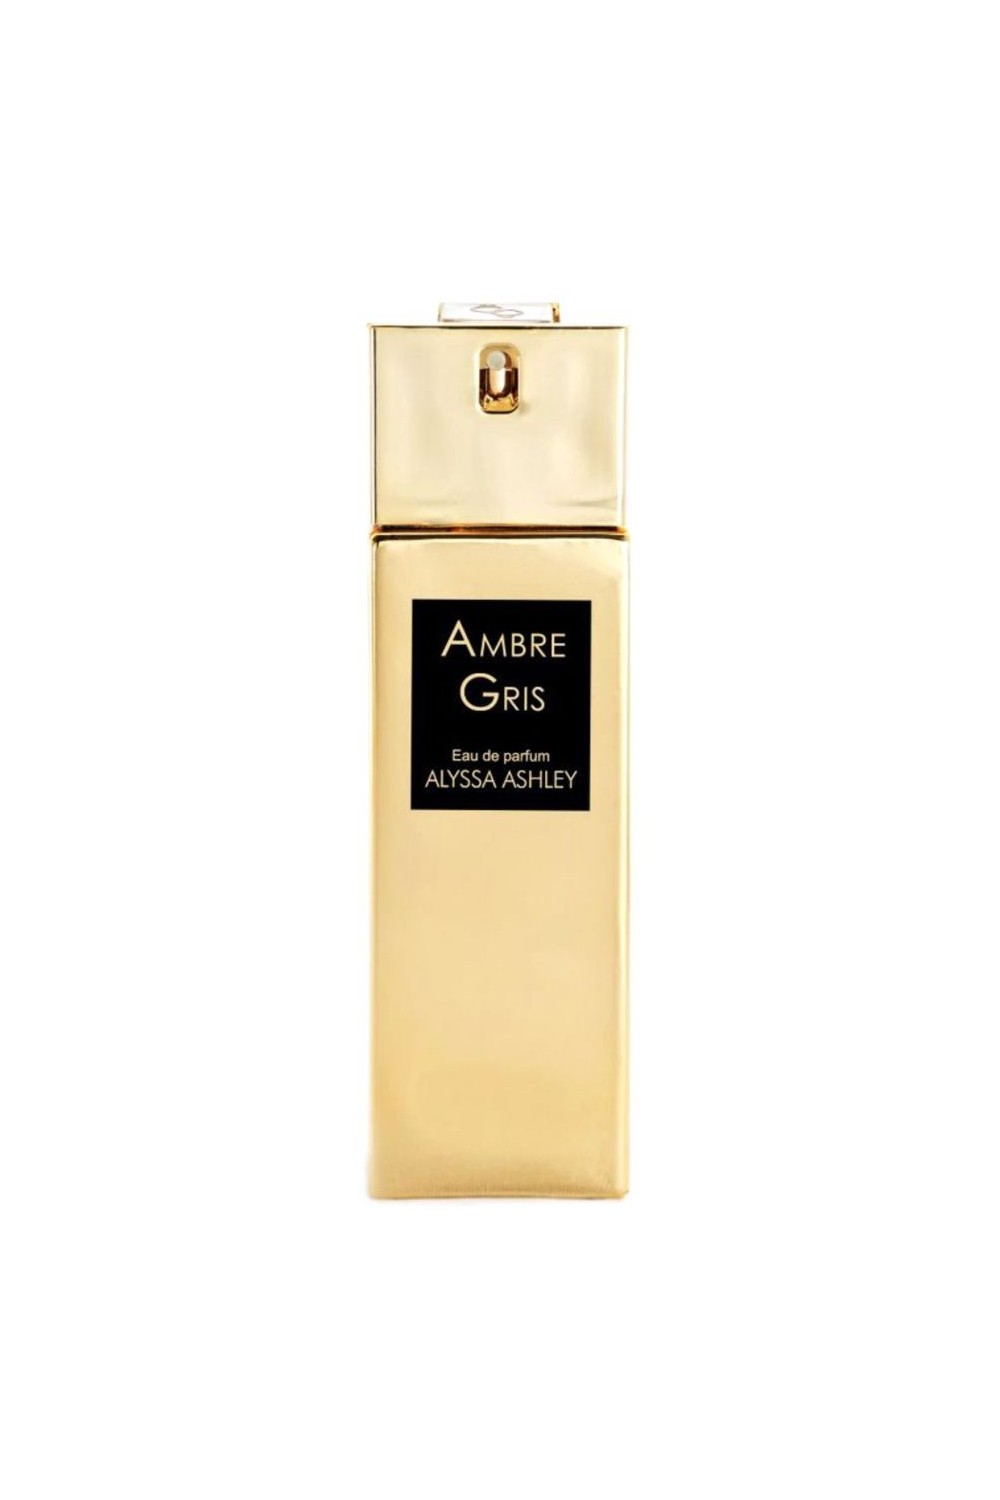 Alyssa Ashley Ambre Gris Eau De Perfume Spray 100ml